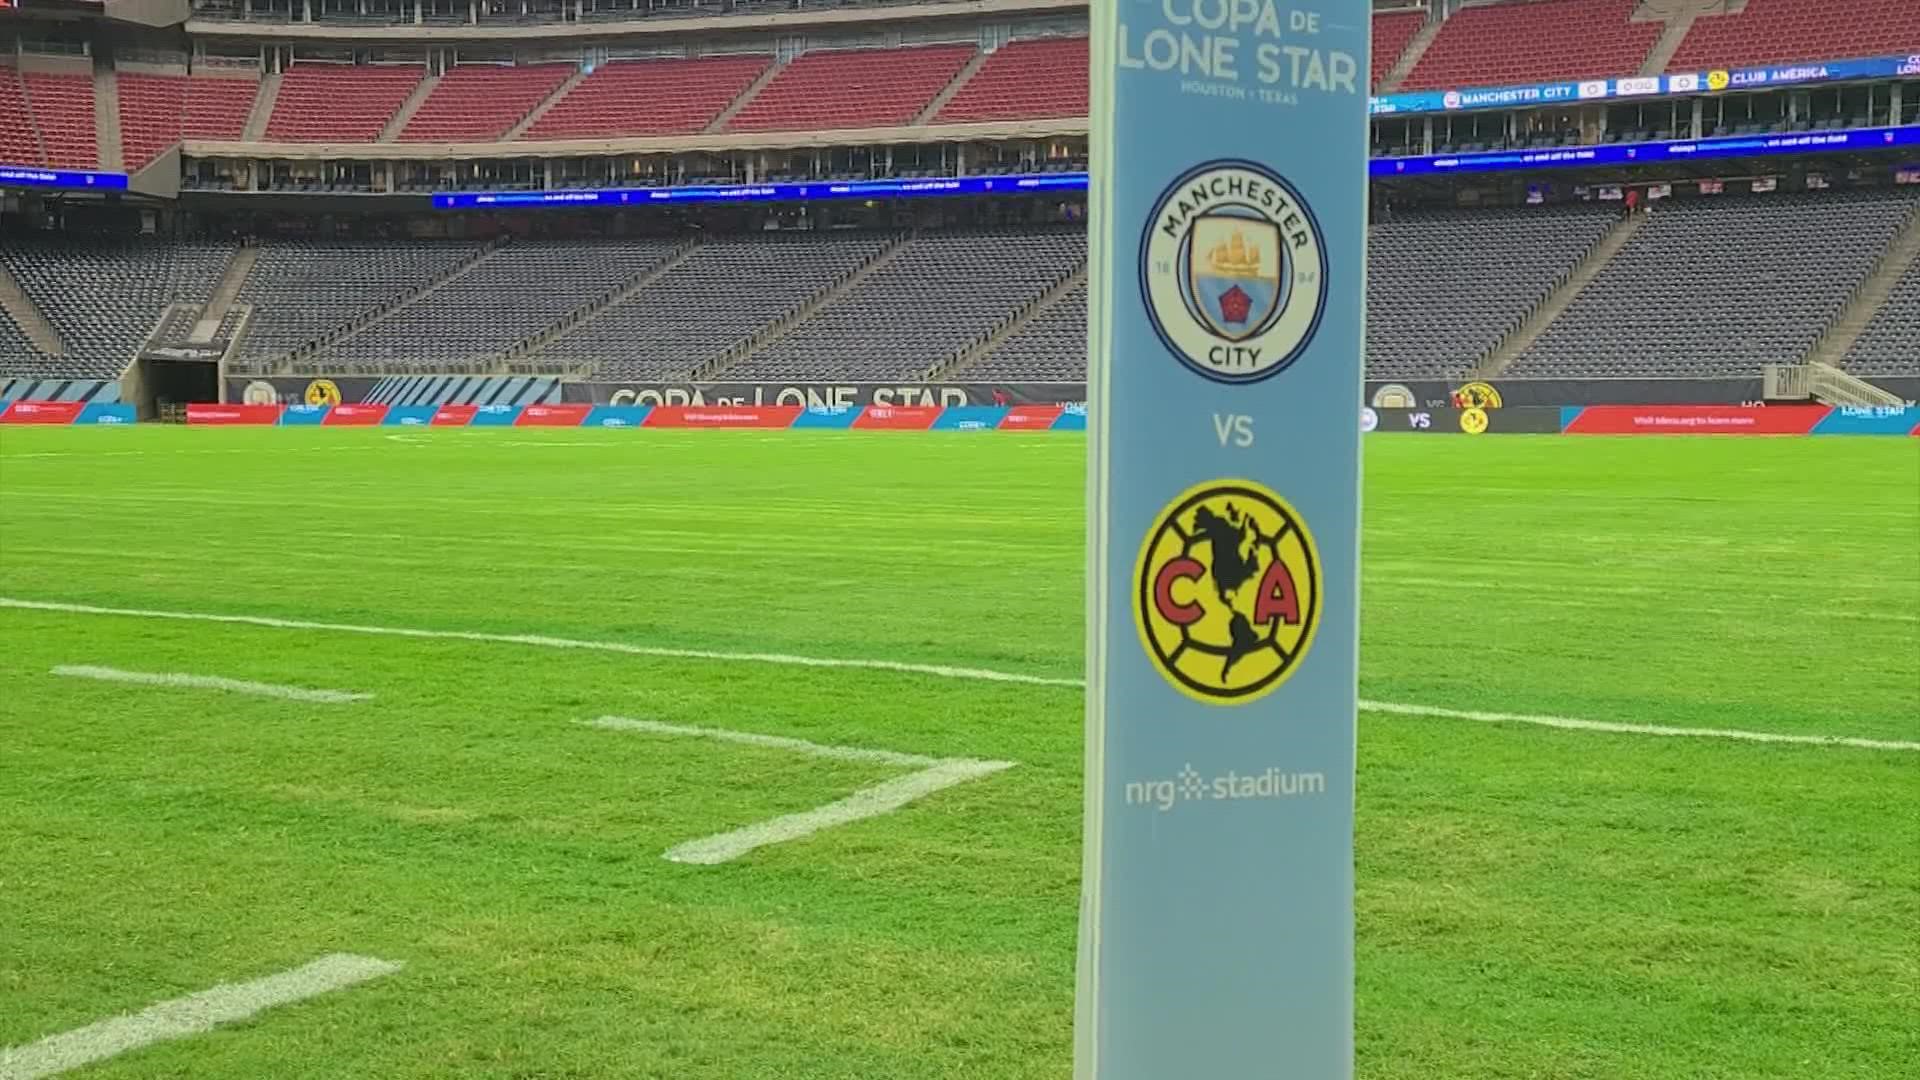 Cope de Lone Star 2022: Man City vs. Club América 